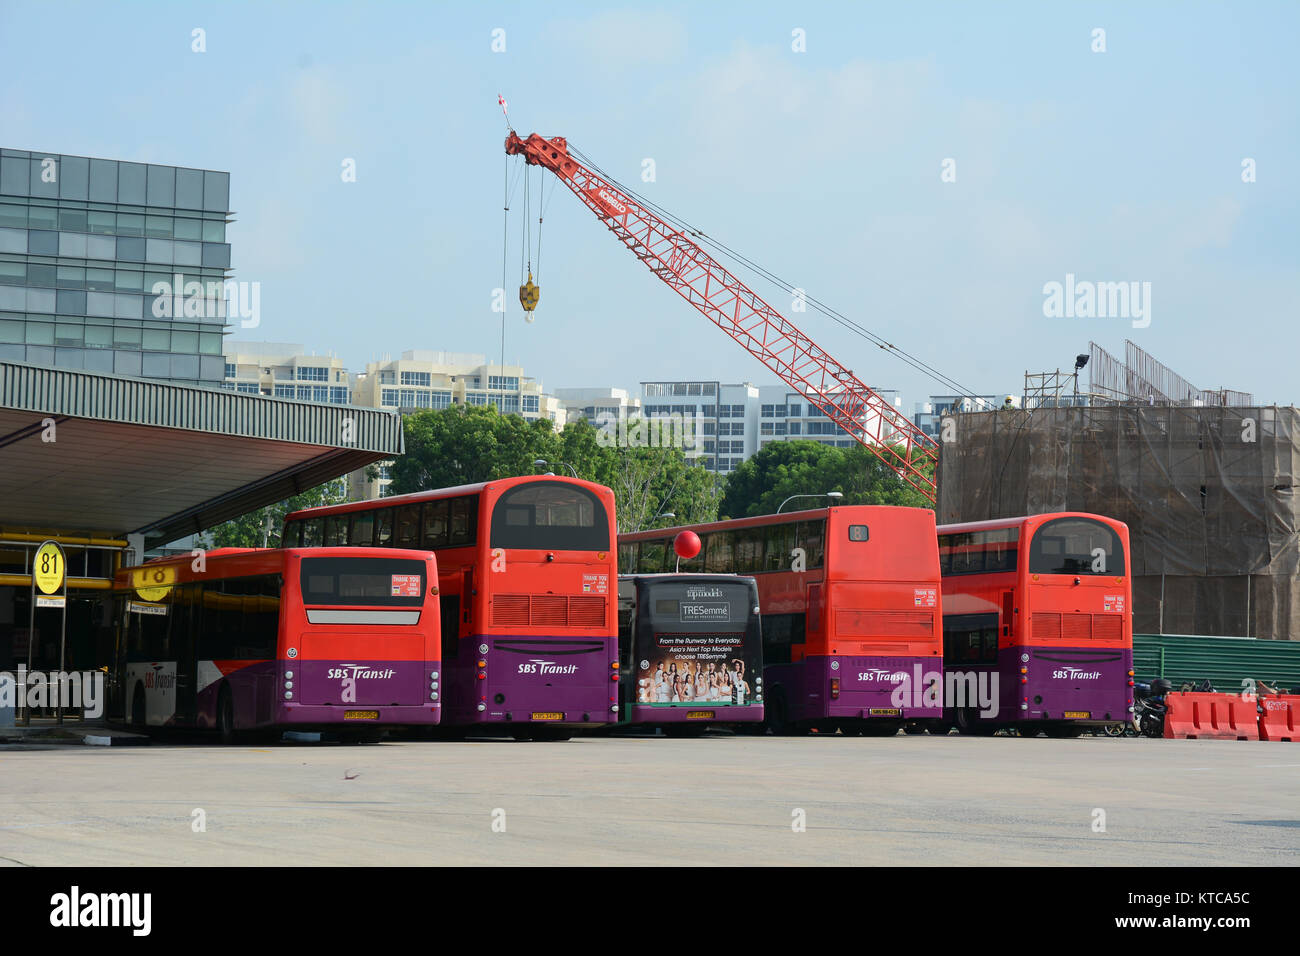 Singapour - Jul 3, 2015. Services de transport Autobus à un terminal de bus occupé à Singapour. SBS Transit est un opérateur ferroviaire et routière à Singapour et porte cl Banque D'Images